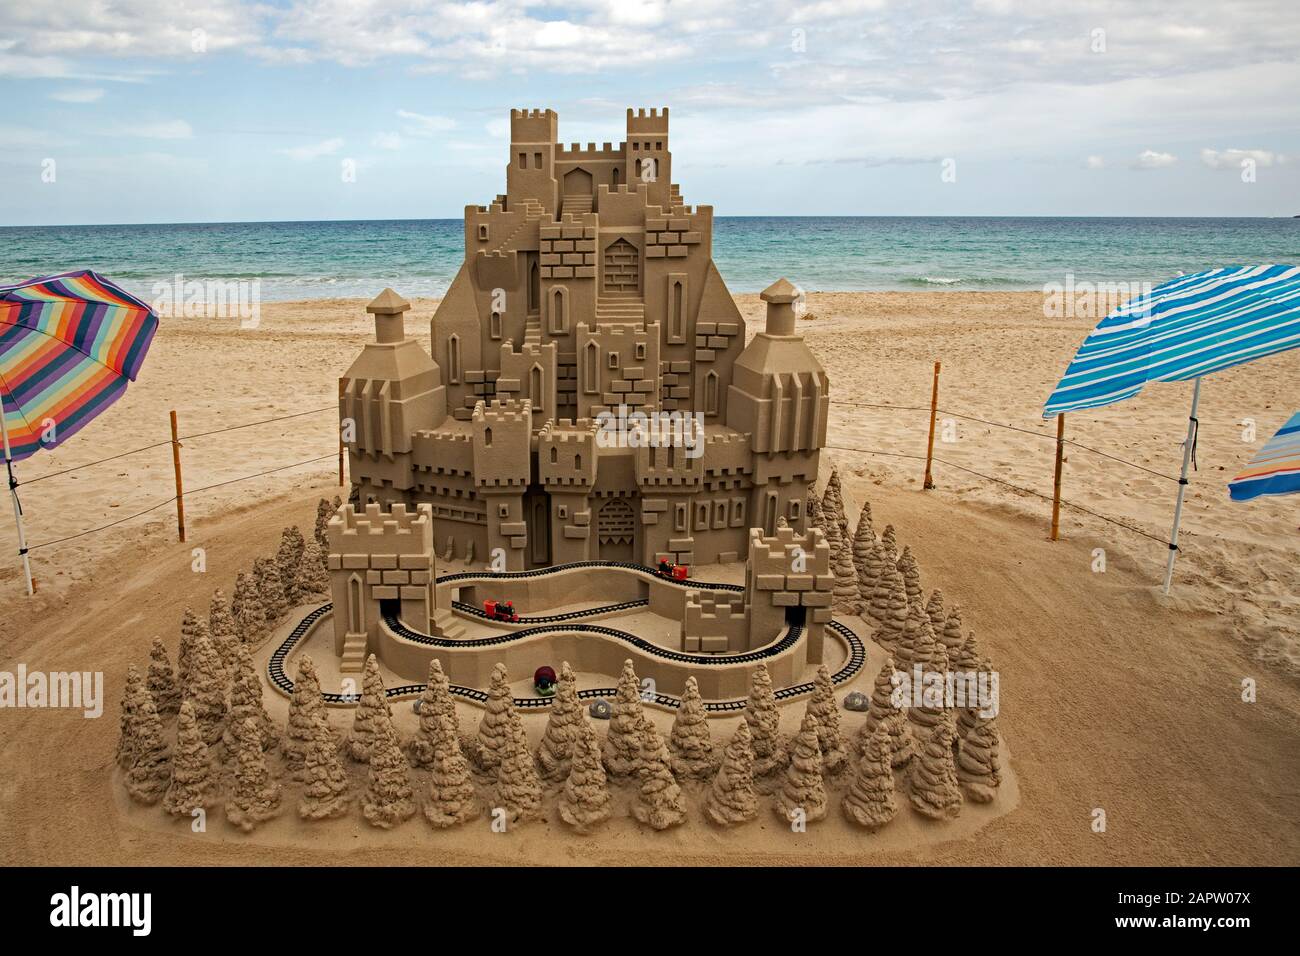 Un chemin de fer modèle longe un château de sable géant sur la plage de Cala Millor, Majorque, Espagne. Banque D'Images